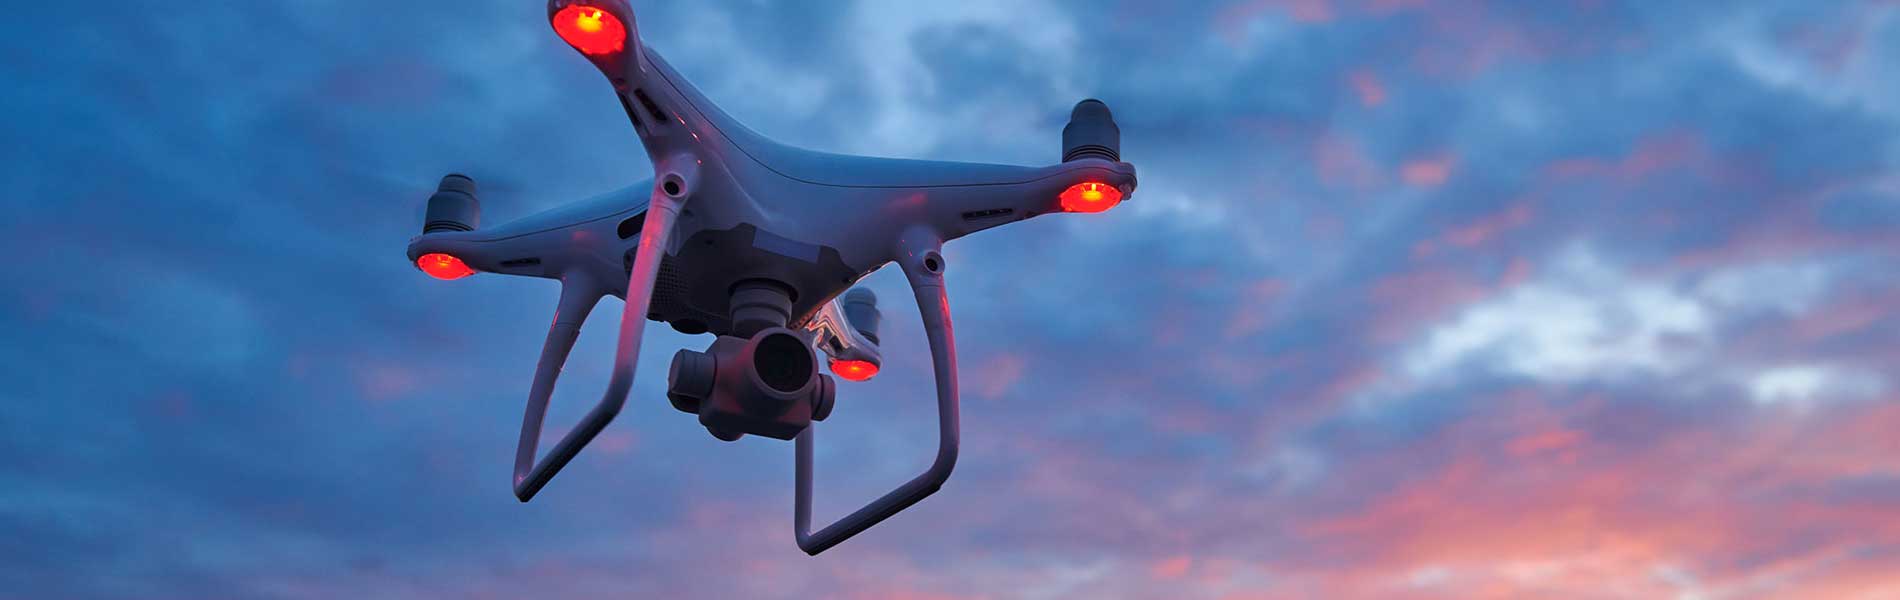 Prise de vue drone immobilier